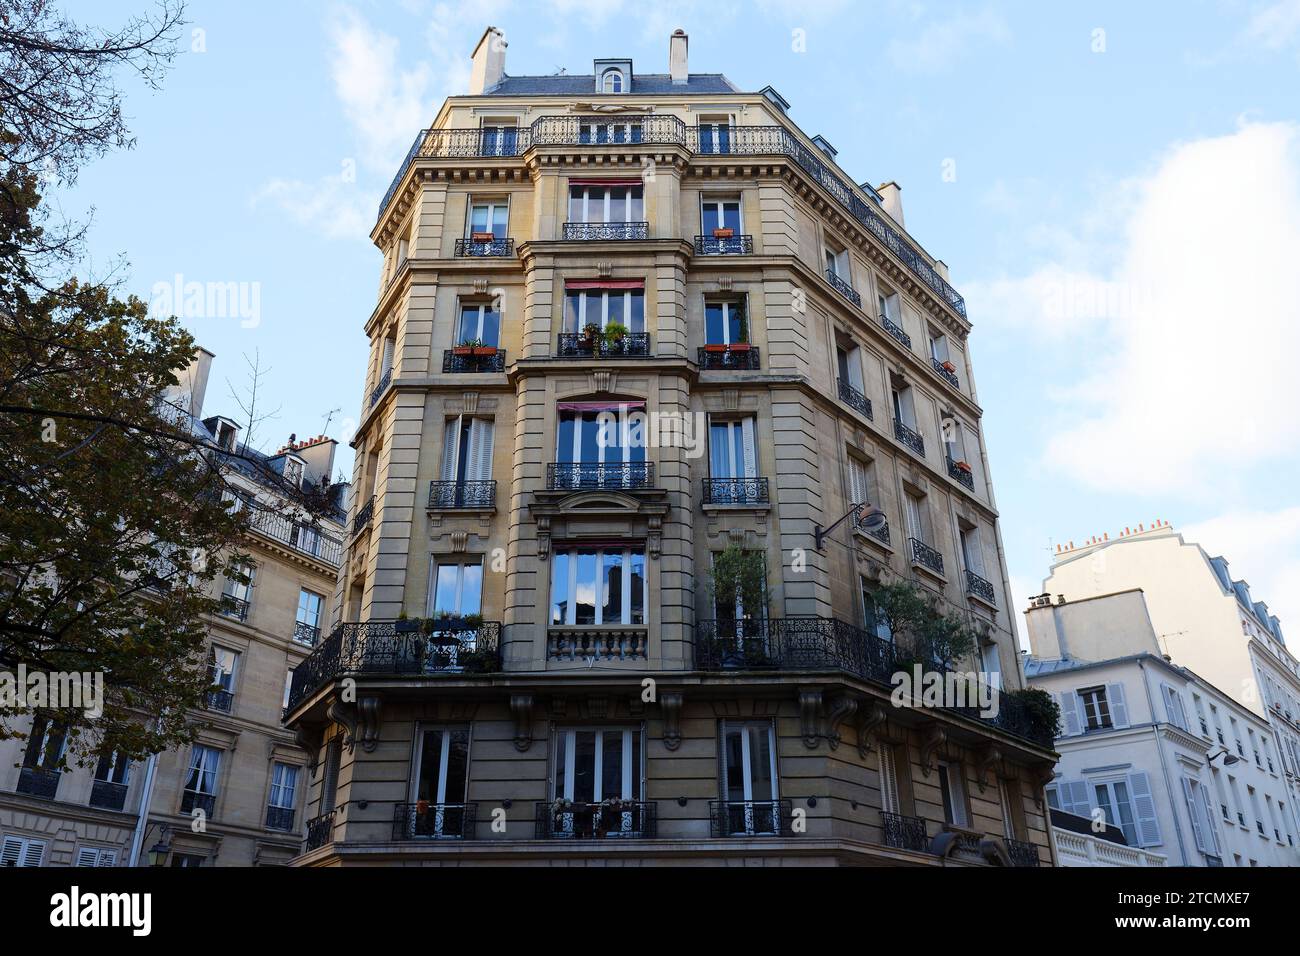 Die Fassade eines traditionellen französischen Hauses mit typischen Balkonen und Fenstern. Paris, Frankreich. Stockfoto